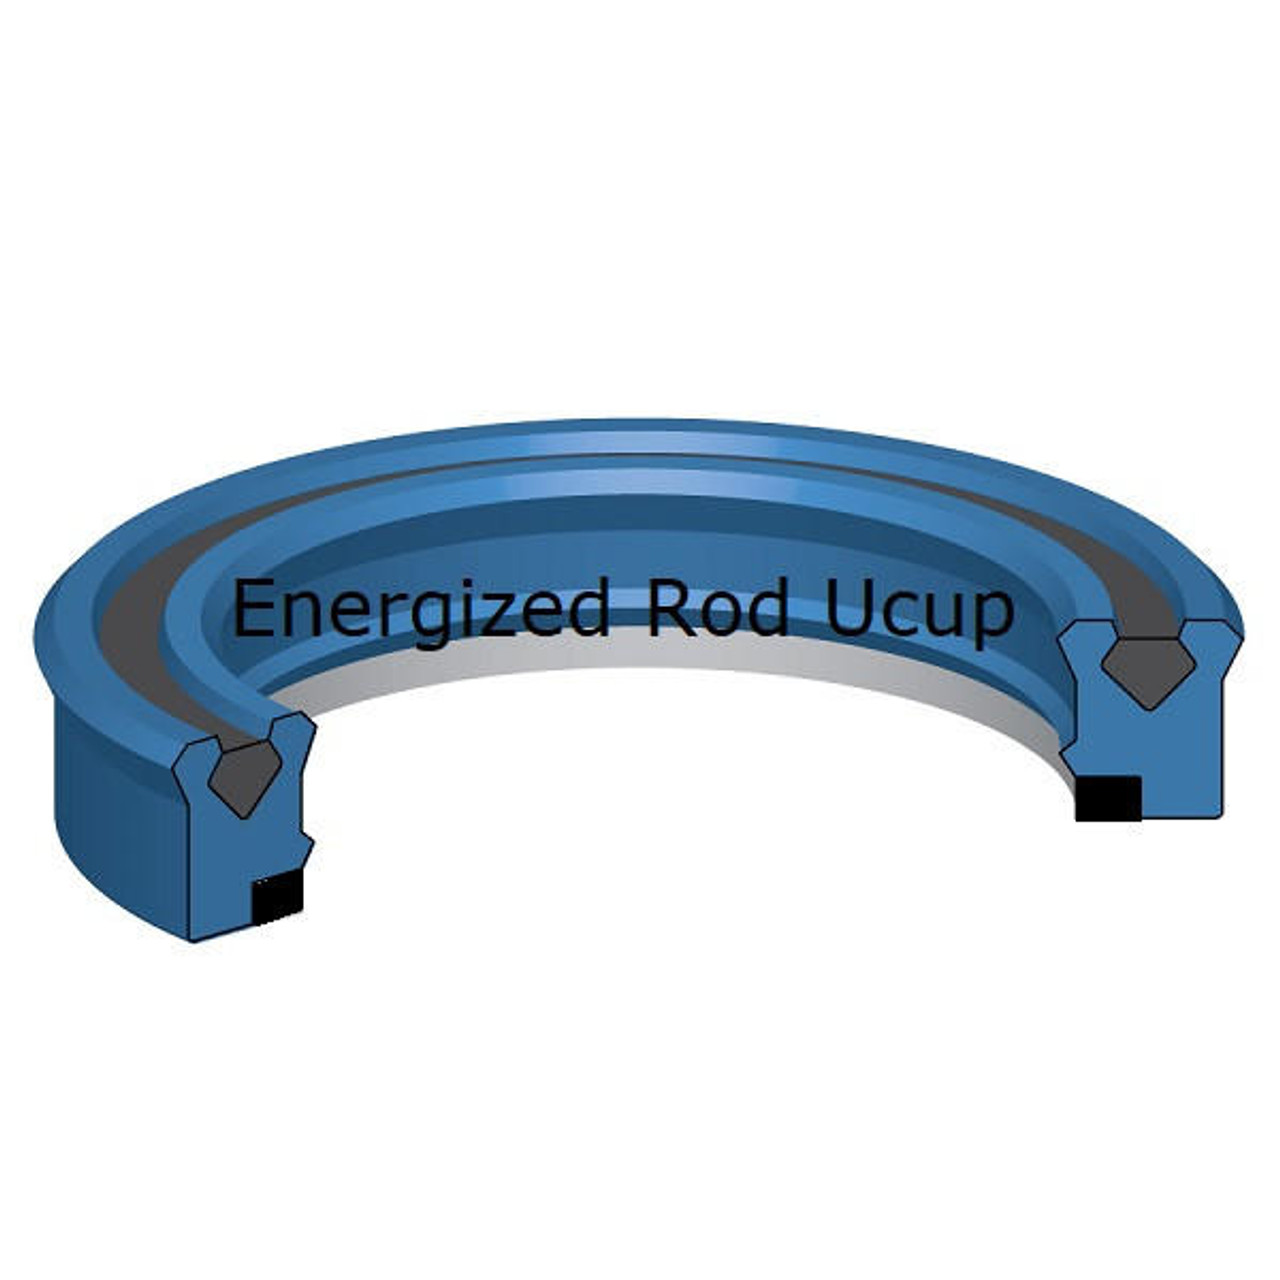 Energized Rod U cup 140mm ID x 160mm OD x 14.6mm Seal  10,000 PSI